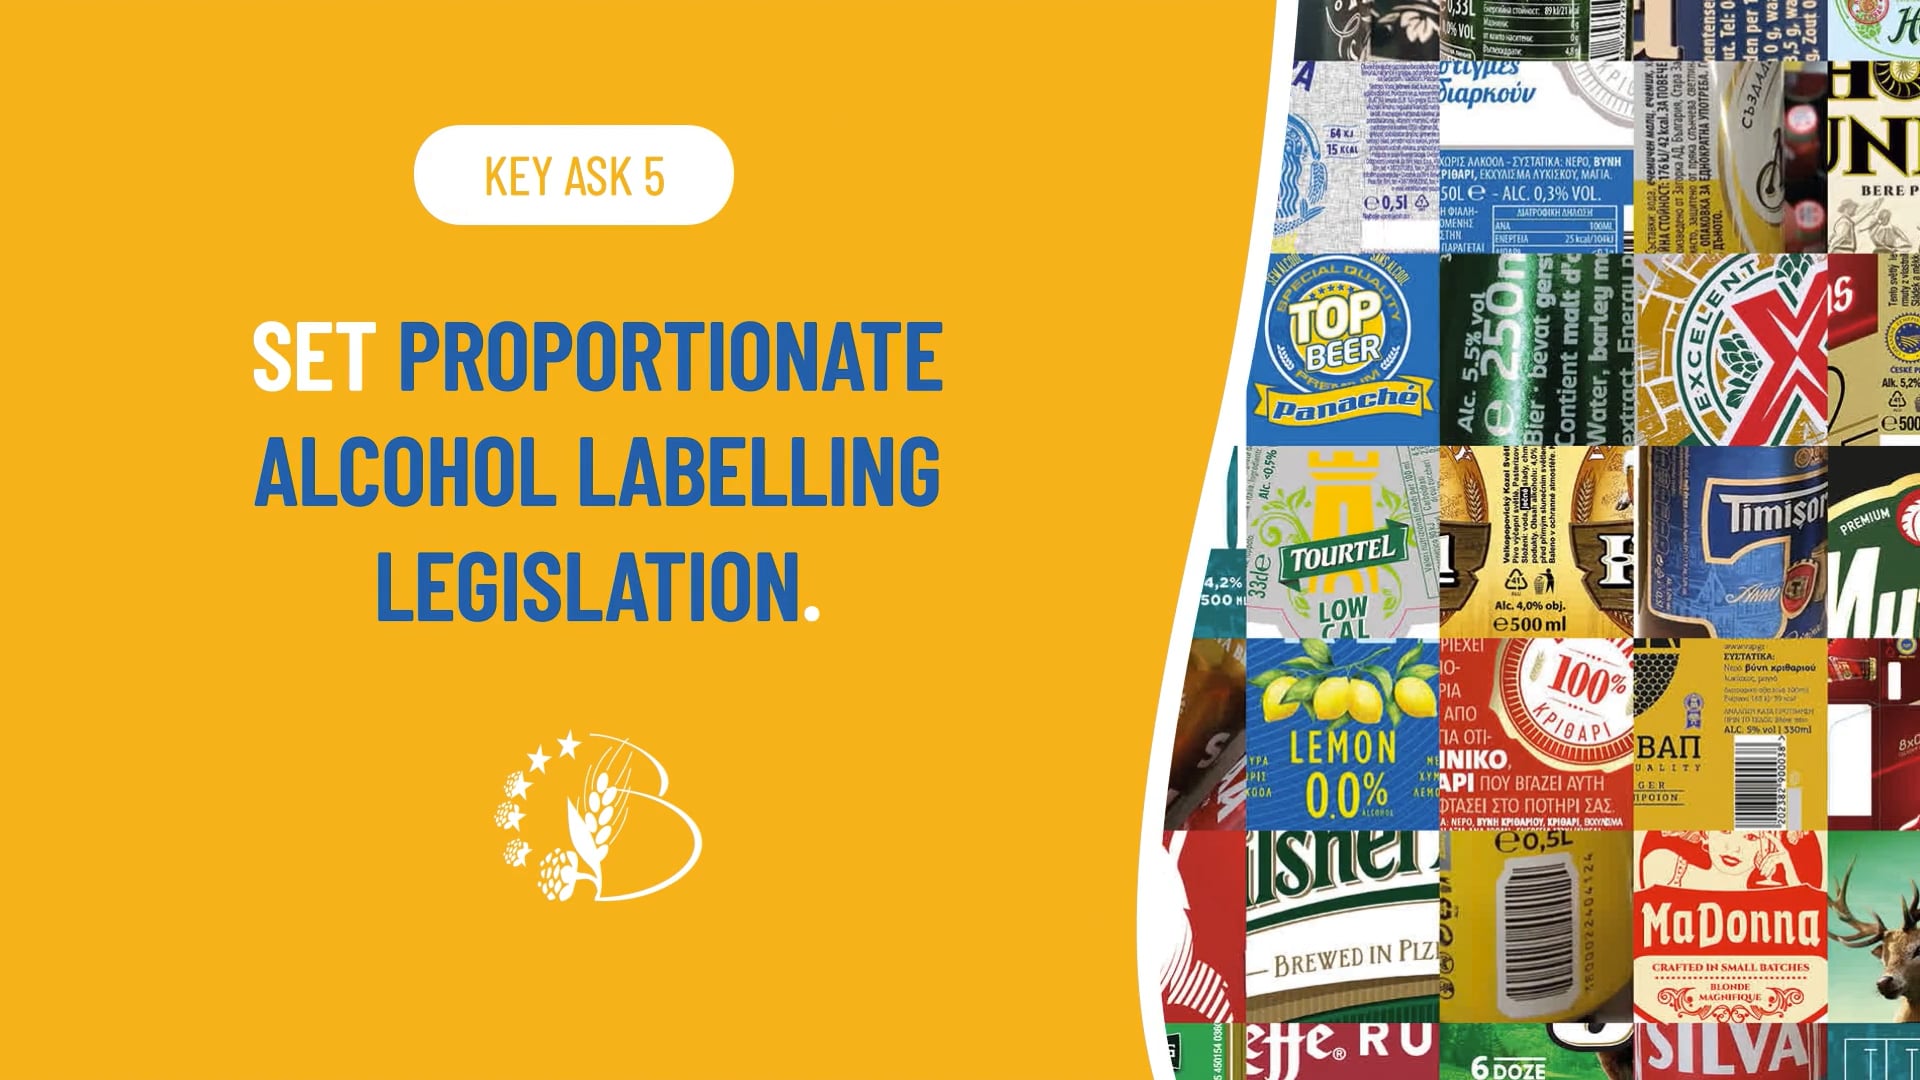 ASK #5 - SET PROPORTIONATE ALCOHOL LABELLING LEGISLATION